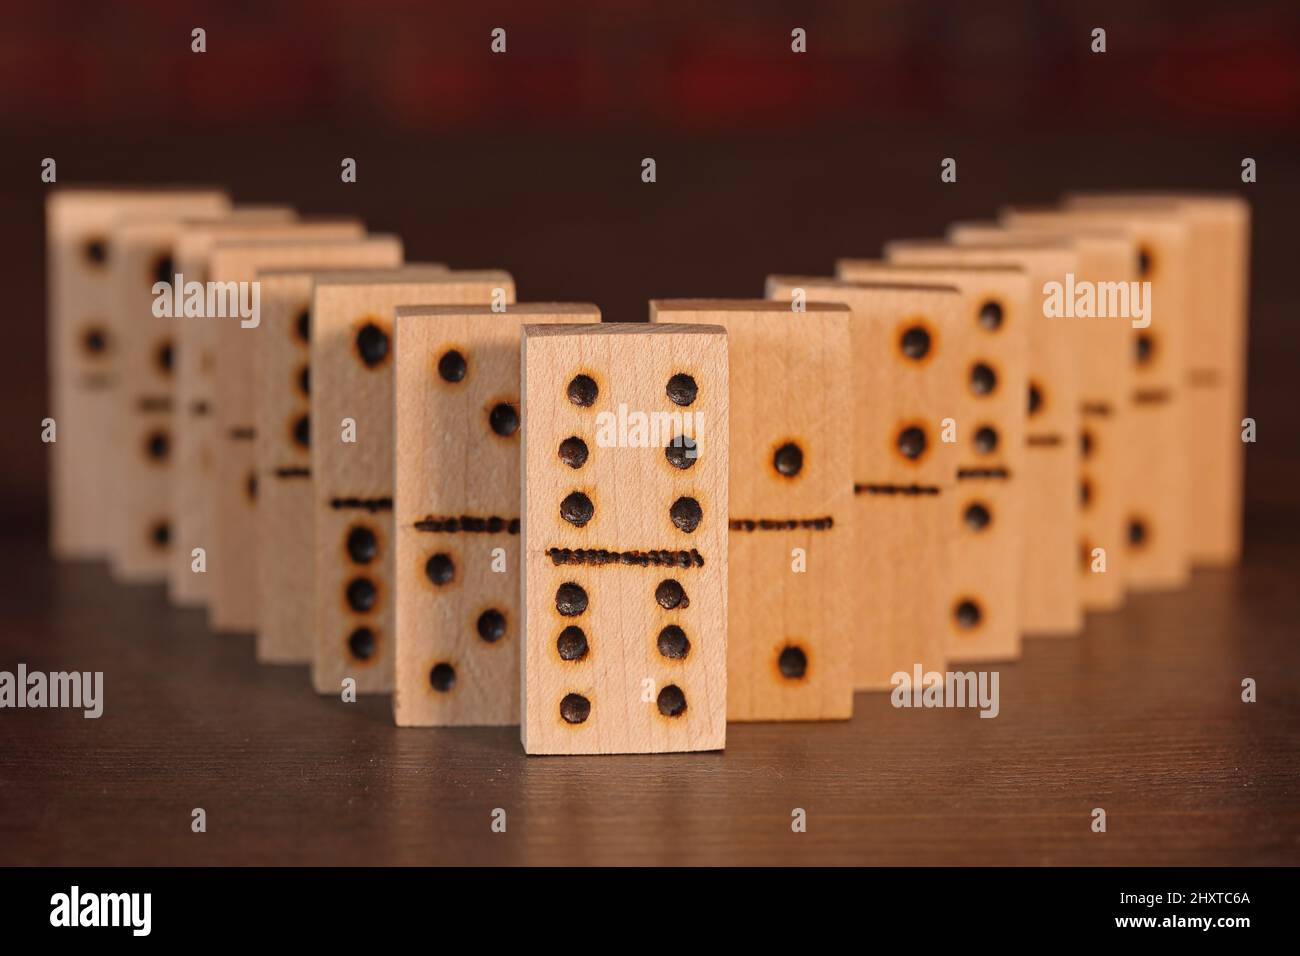 Foto von hölzernen Dominosteinen auf einem Tisch aufgereiht Stockfoto